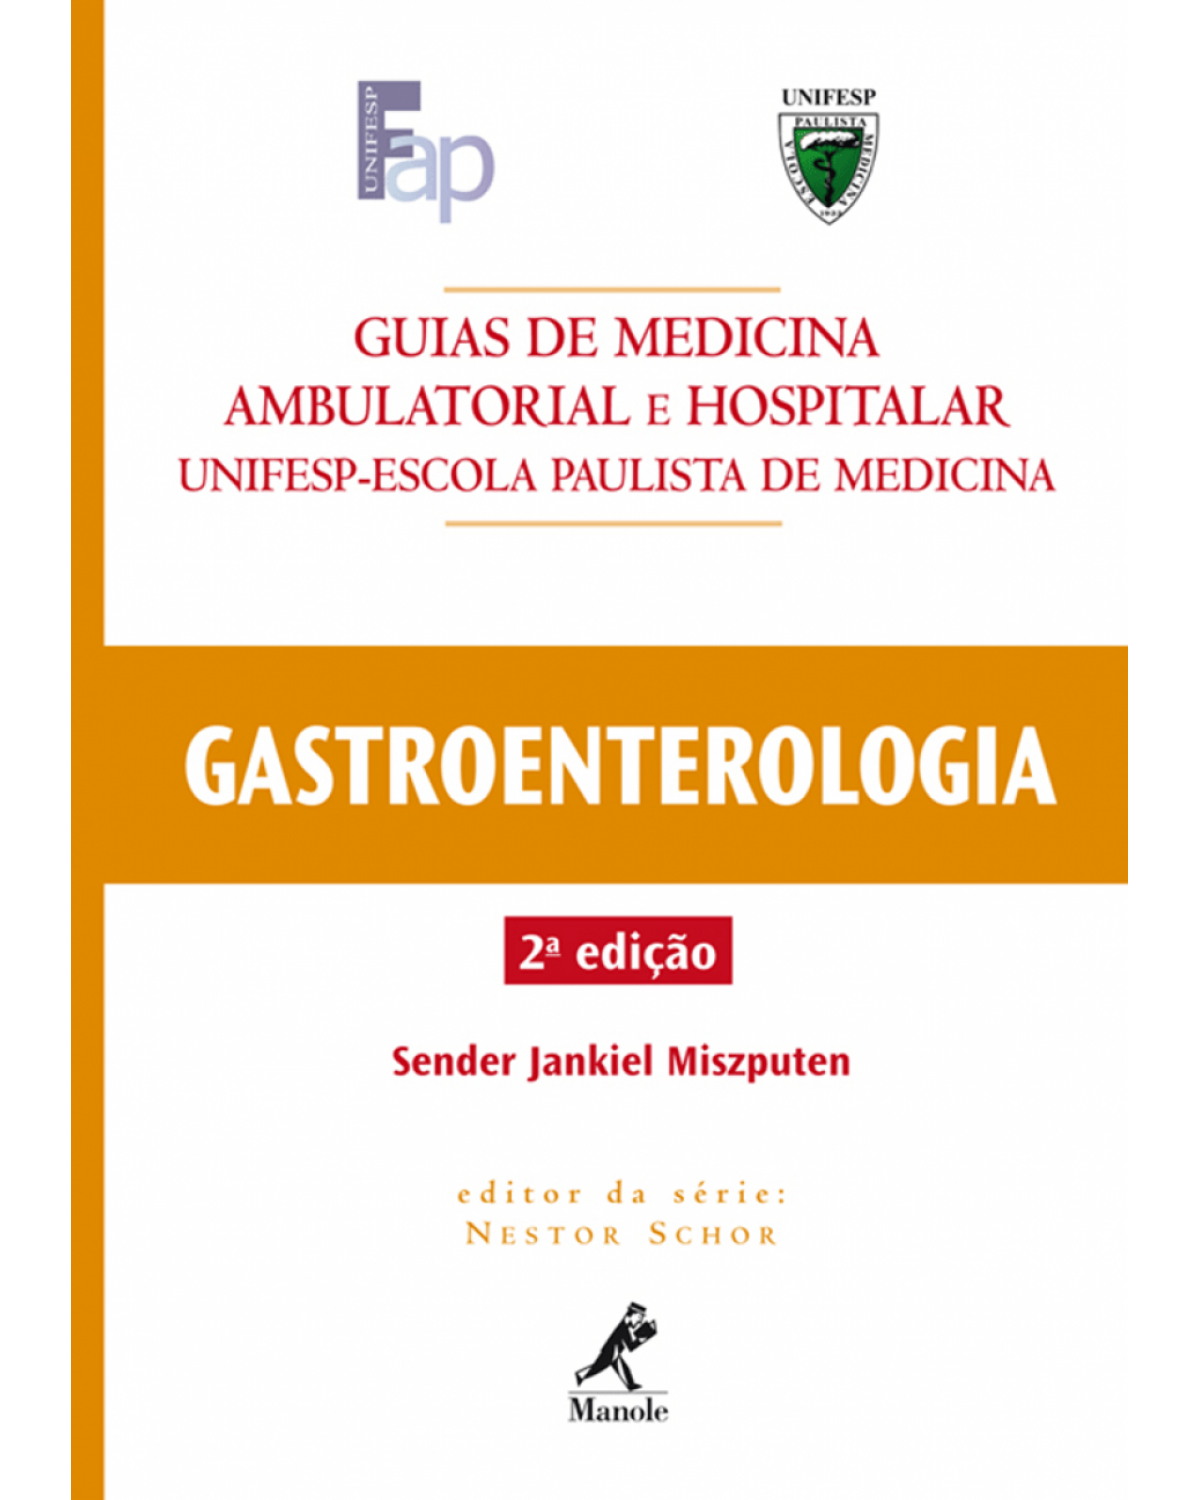 Gastroenterologia - 2ª Edição | 2006